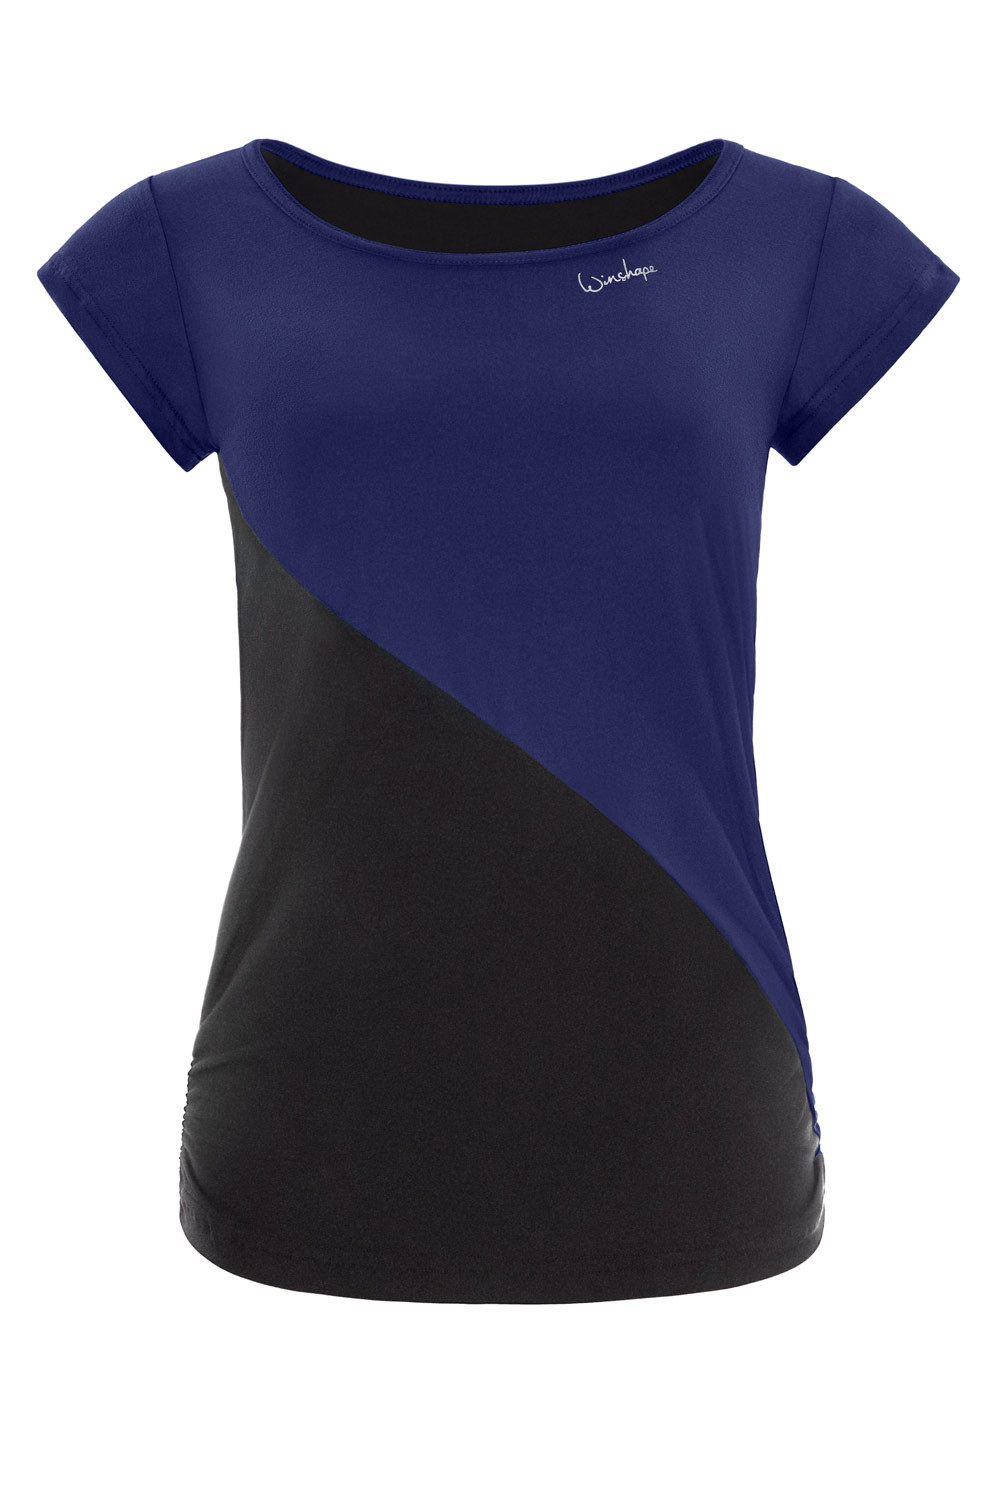 Light dark Kurzarmshirt blue/schwarz, Soft Winshape Ultra Functional Style AET109LS, Soft and